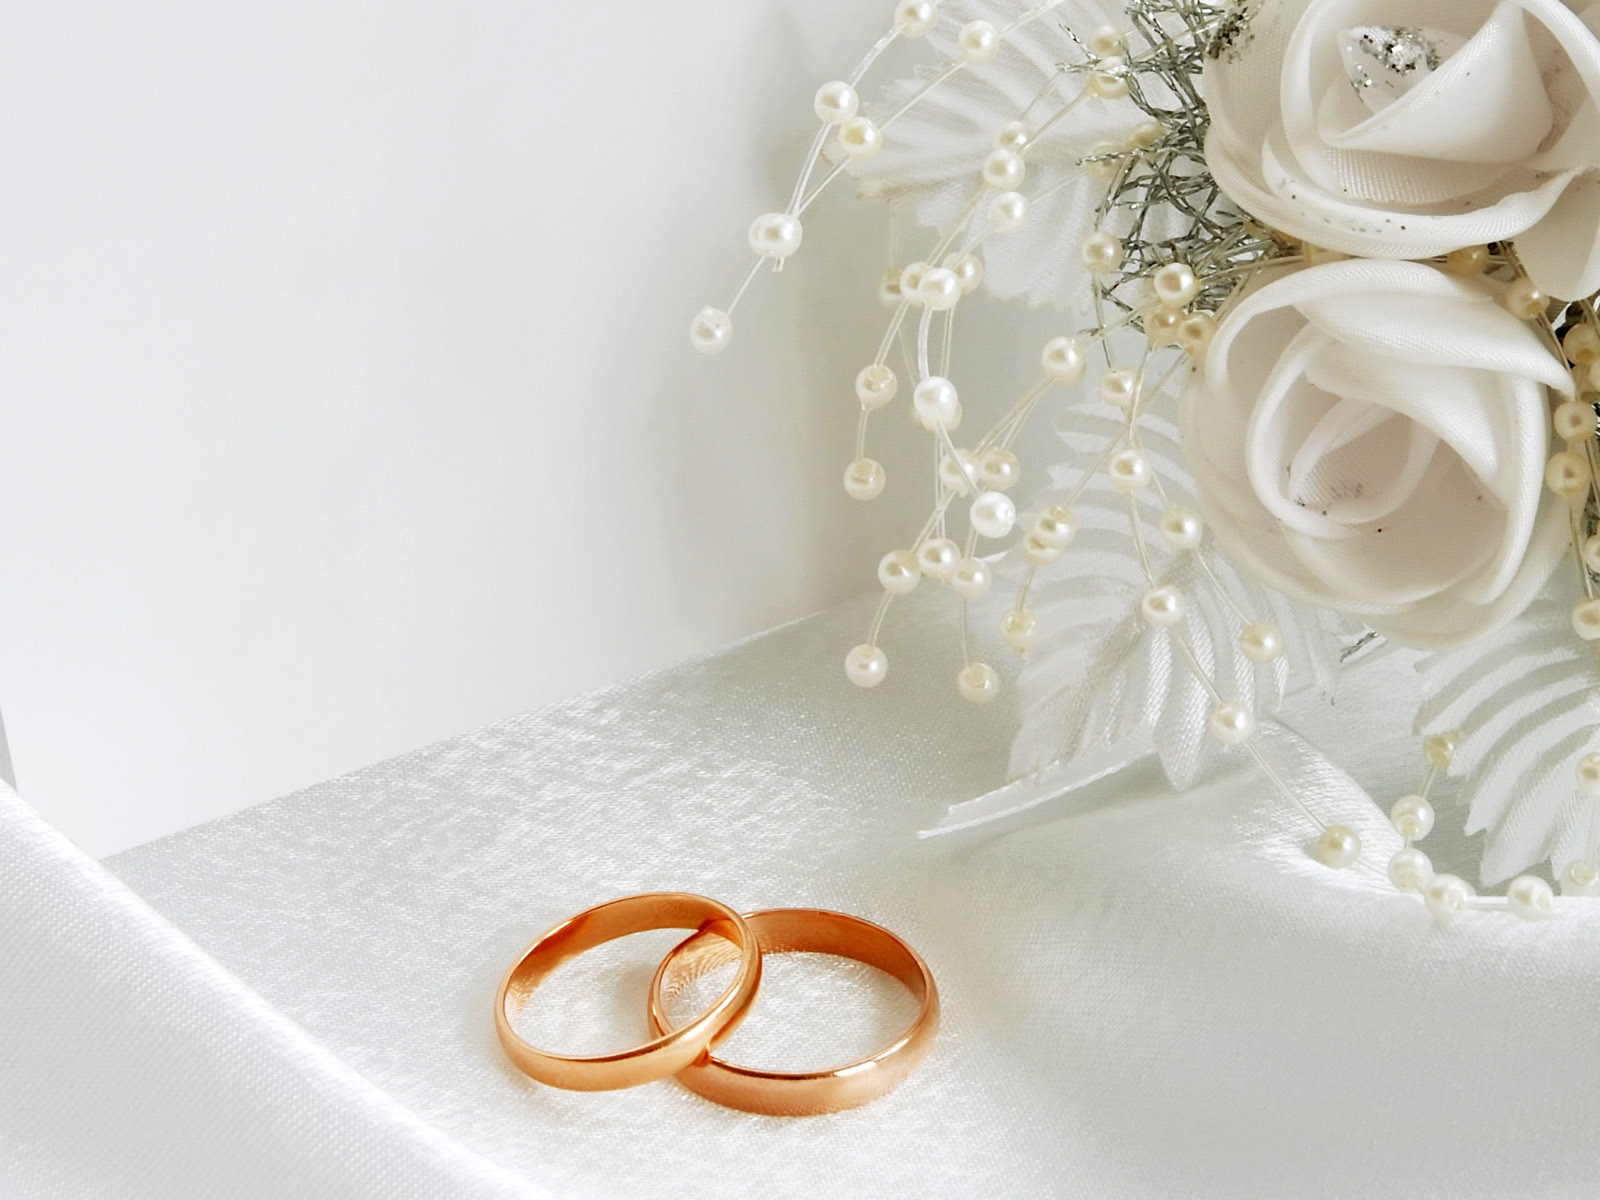 Mariage et papier peint anneau de mariage (2) #4 - 1600x1200